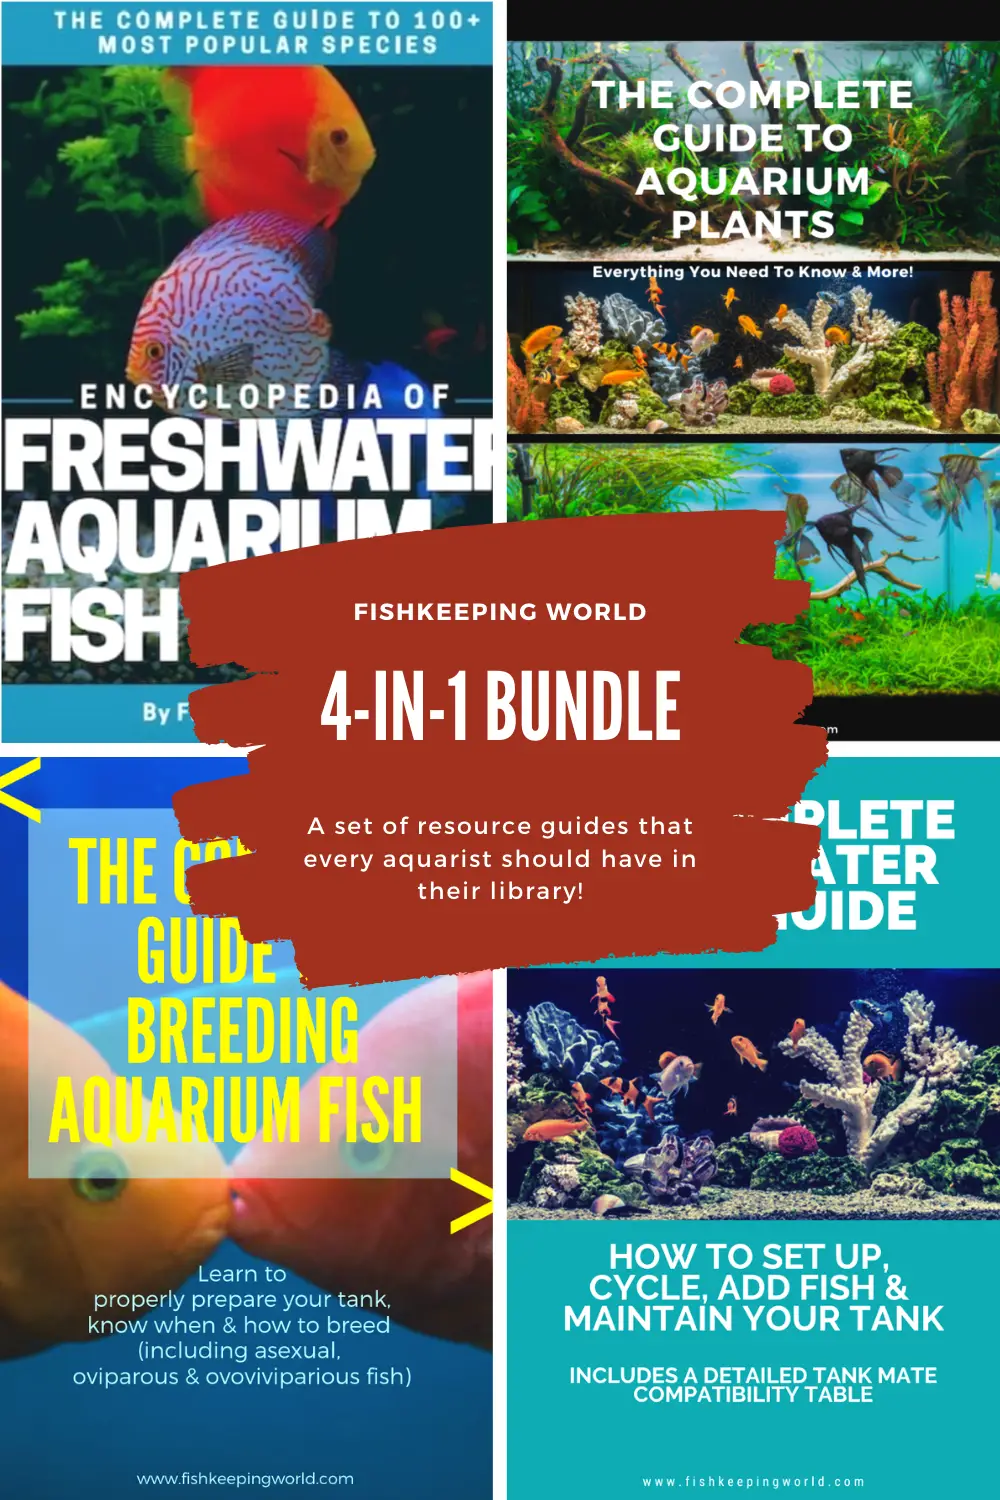 Fishkeeping World's 4-in-1 Bundle Set